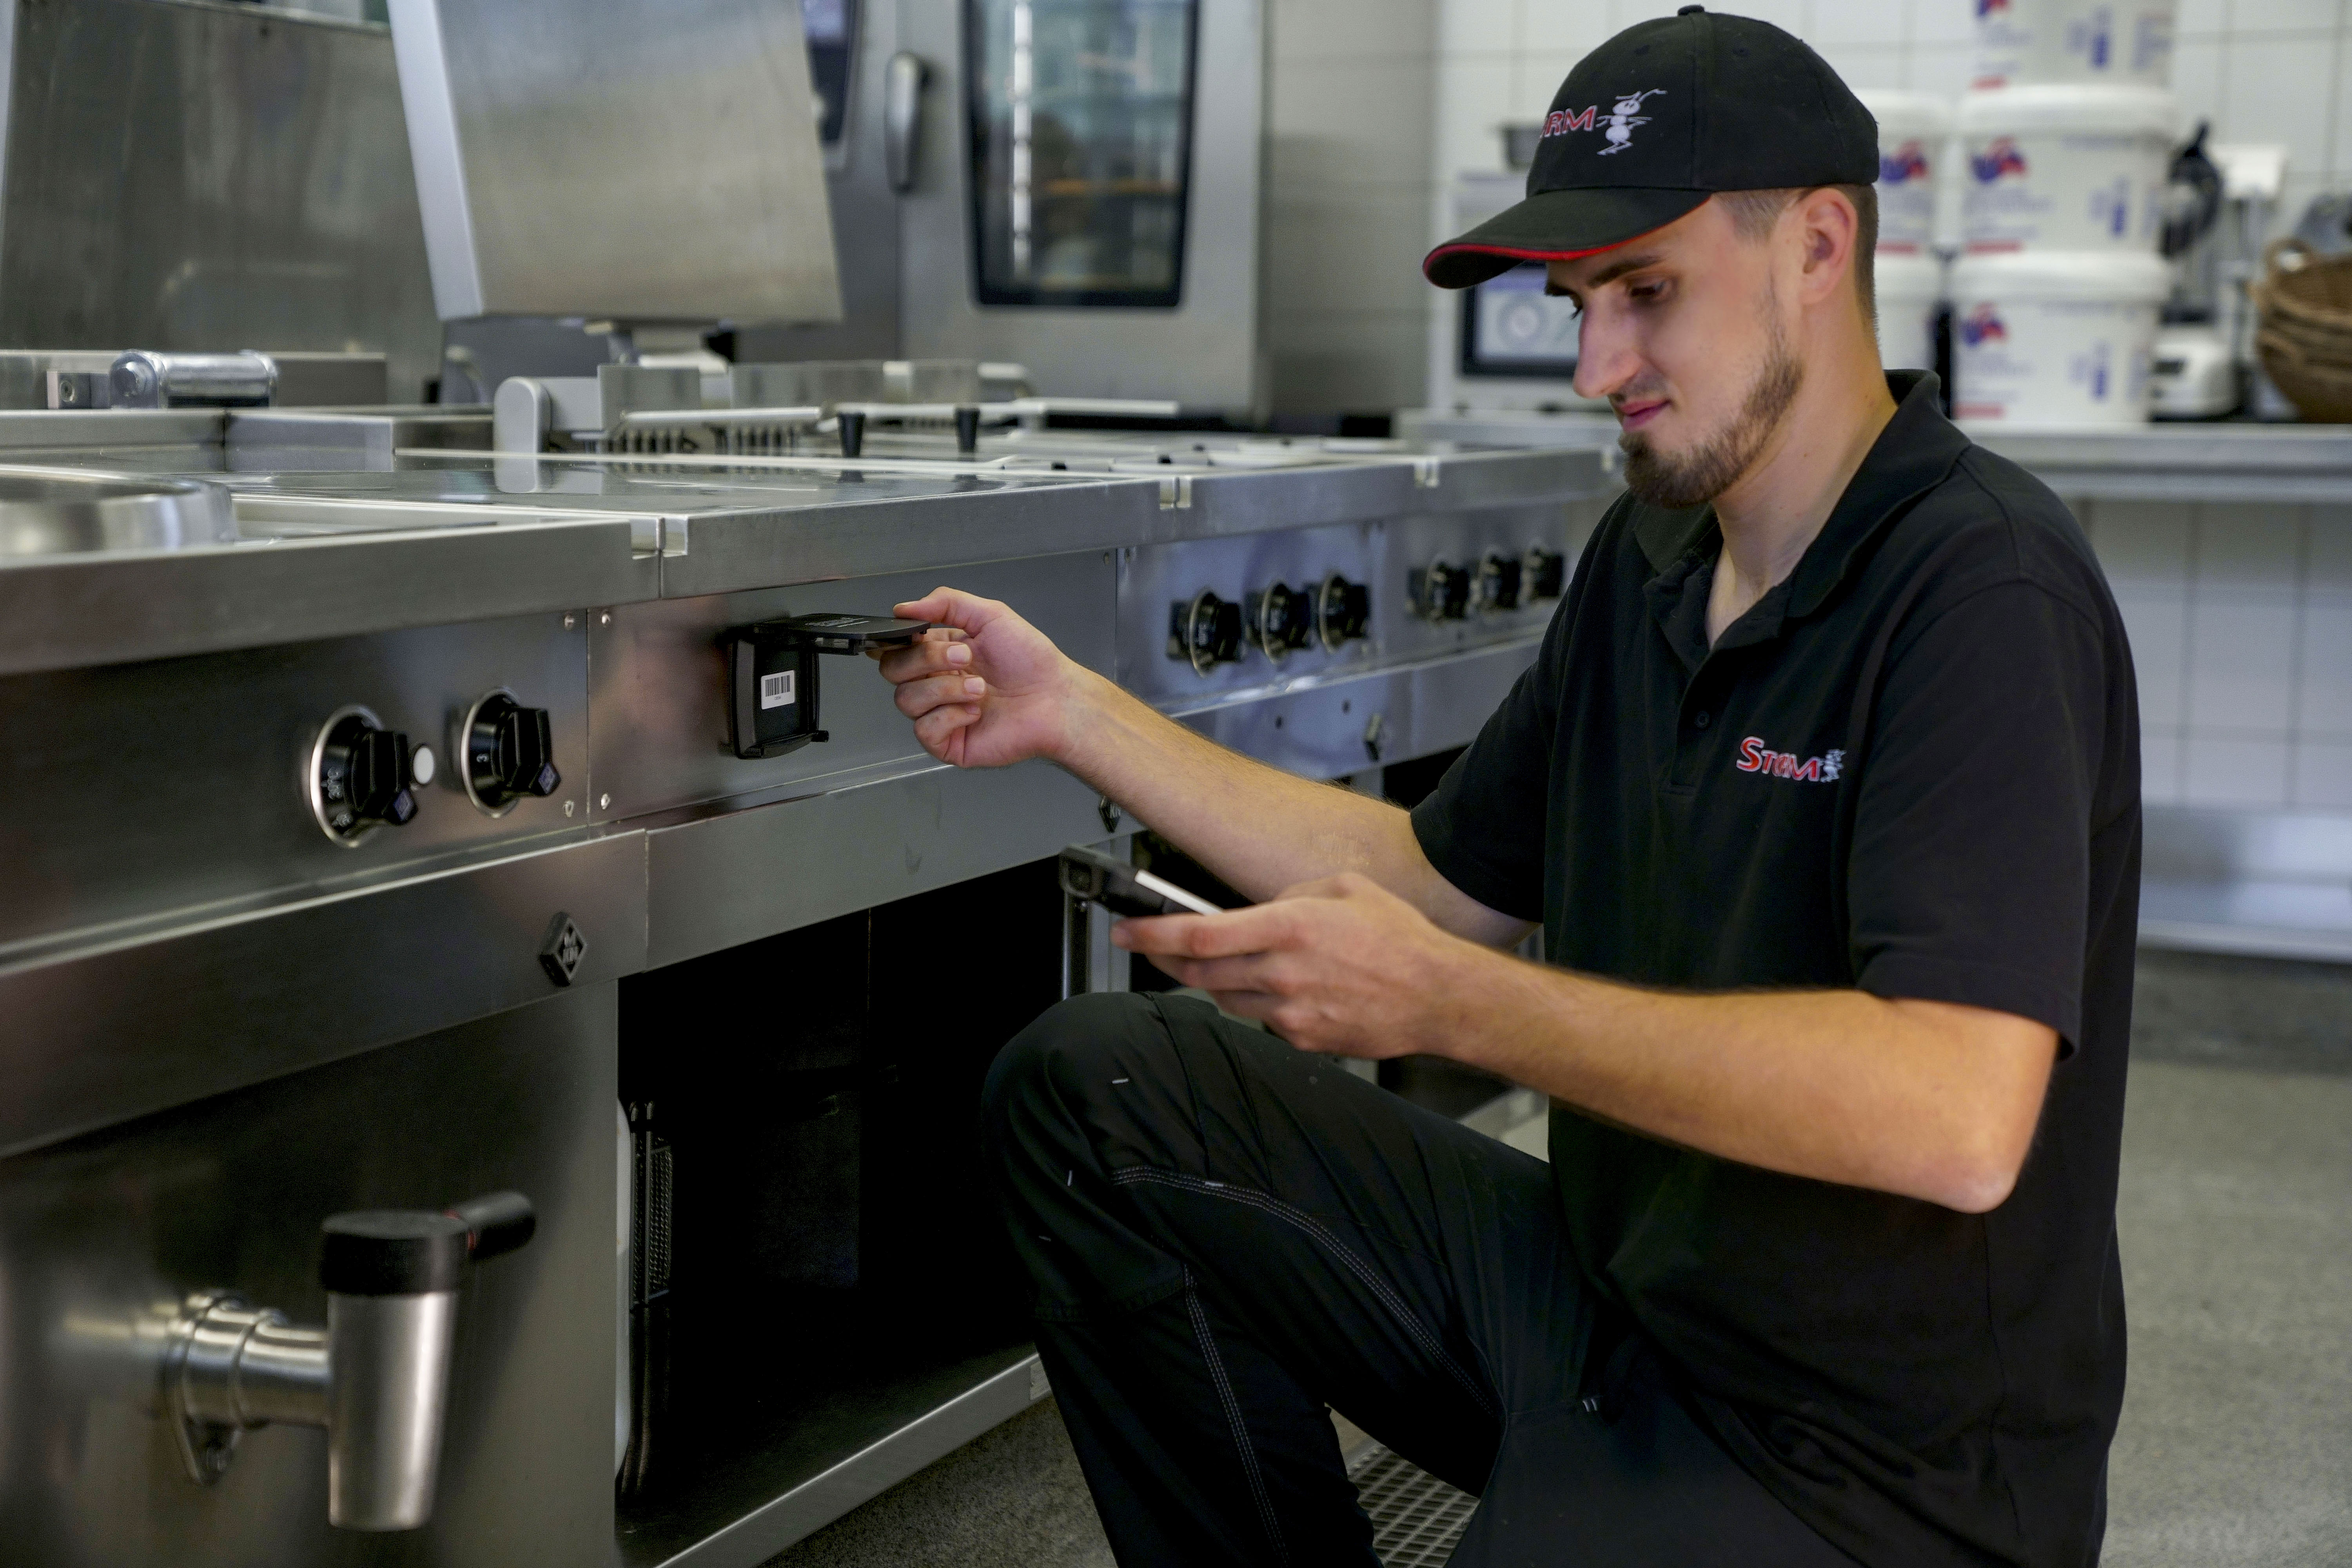 Ein STORM GmbH Mitarbeiter scannt mit einem Handheld-Scanner einen Barcode auf einen Edelstahlschrank in einer Gastronomischen Küche ab.